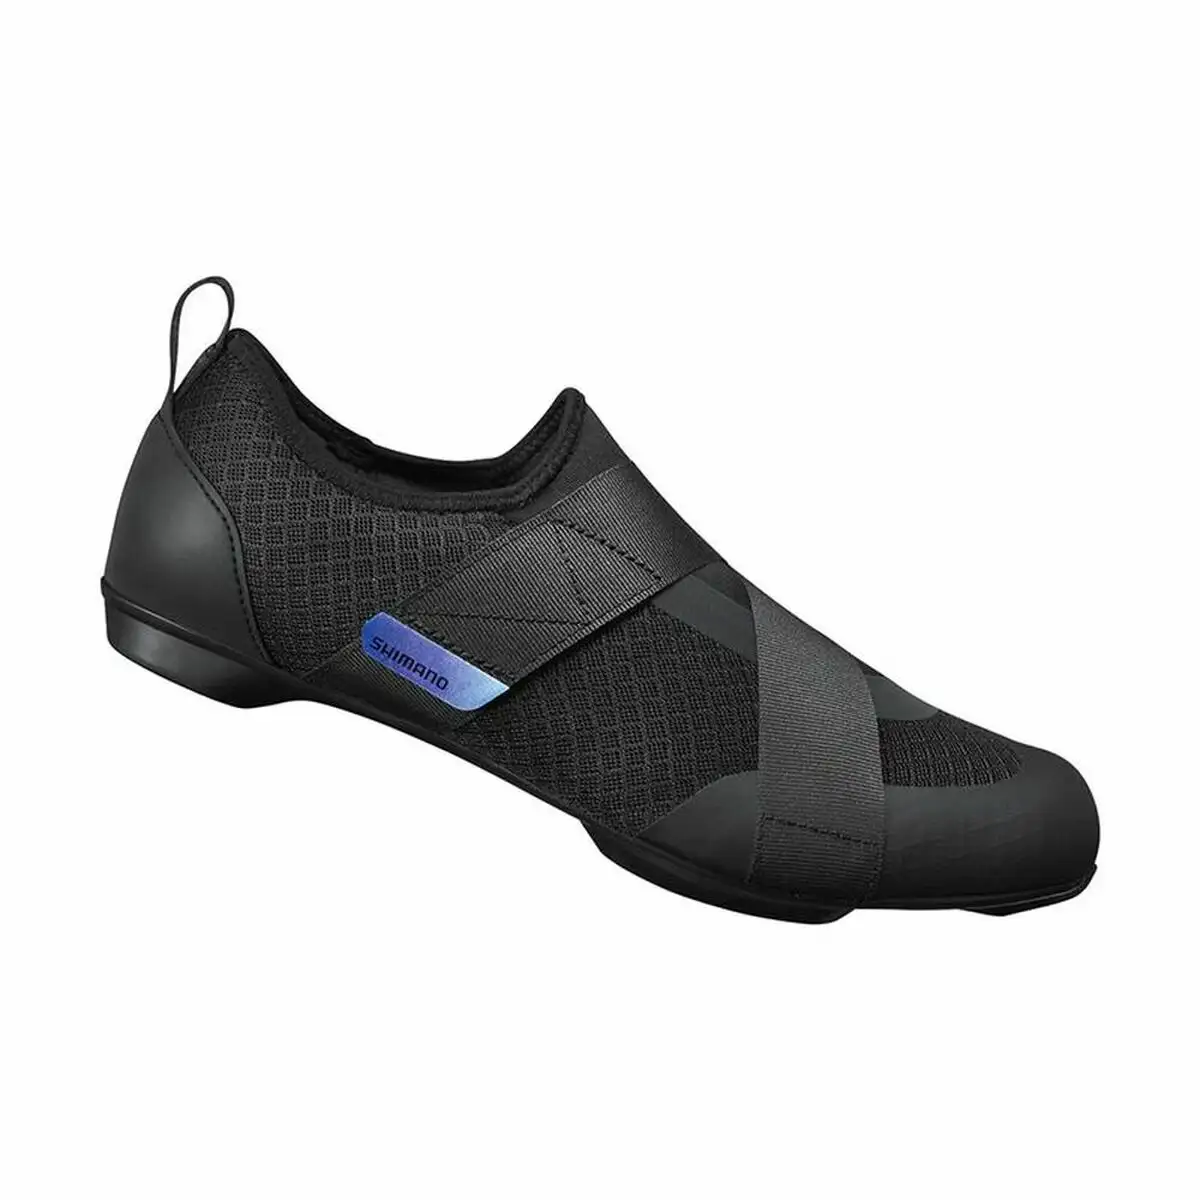 Chaussures de cyclisme shimano sh ic200 noir homme_6991. DIAYTAR SENEGAL - Là où Choisir est une Affirmation de Style. Naviguez à travers notre boutique en ligne et choisissez des produits qui vous distinguent et vous valorisent.